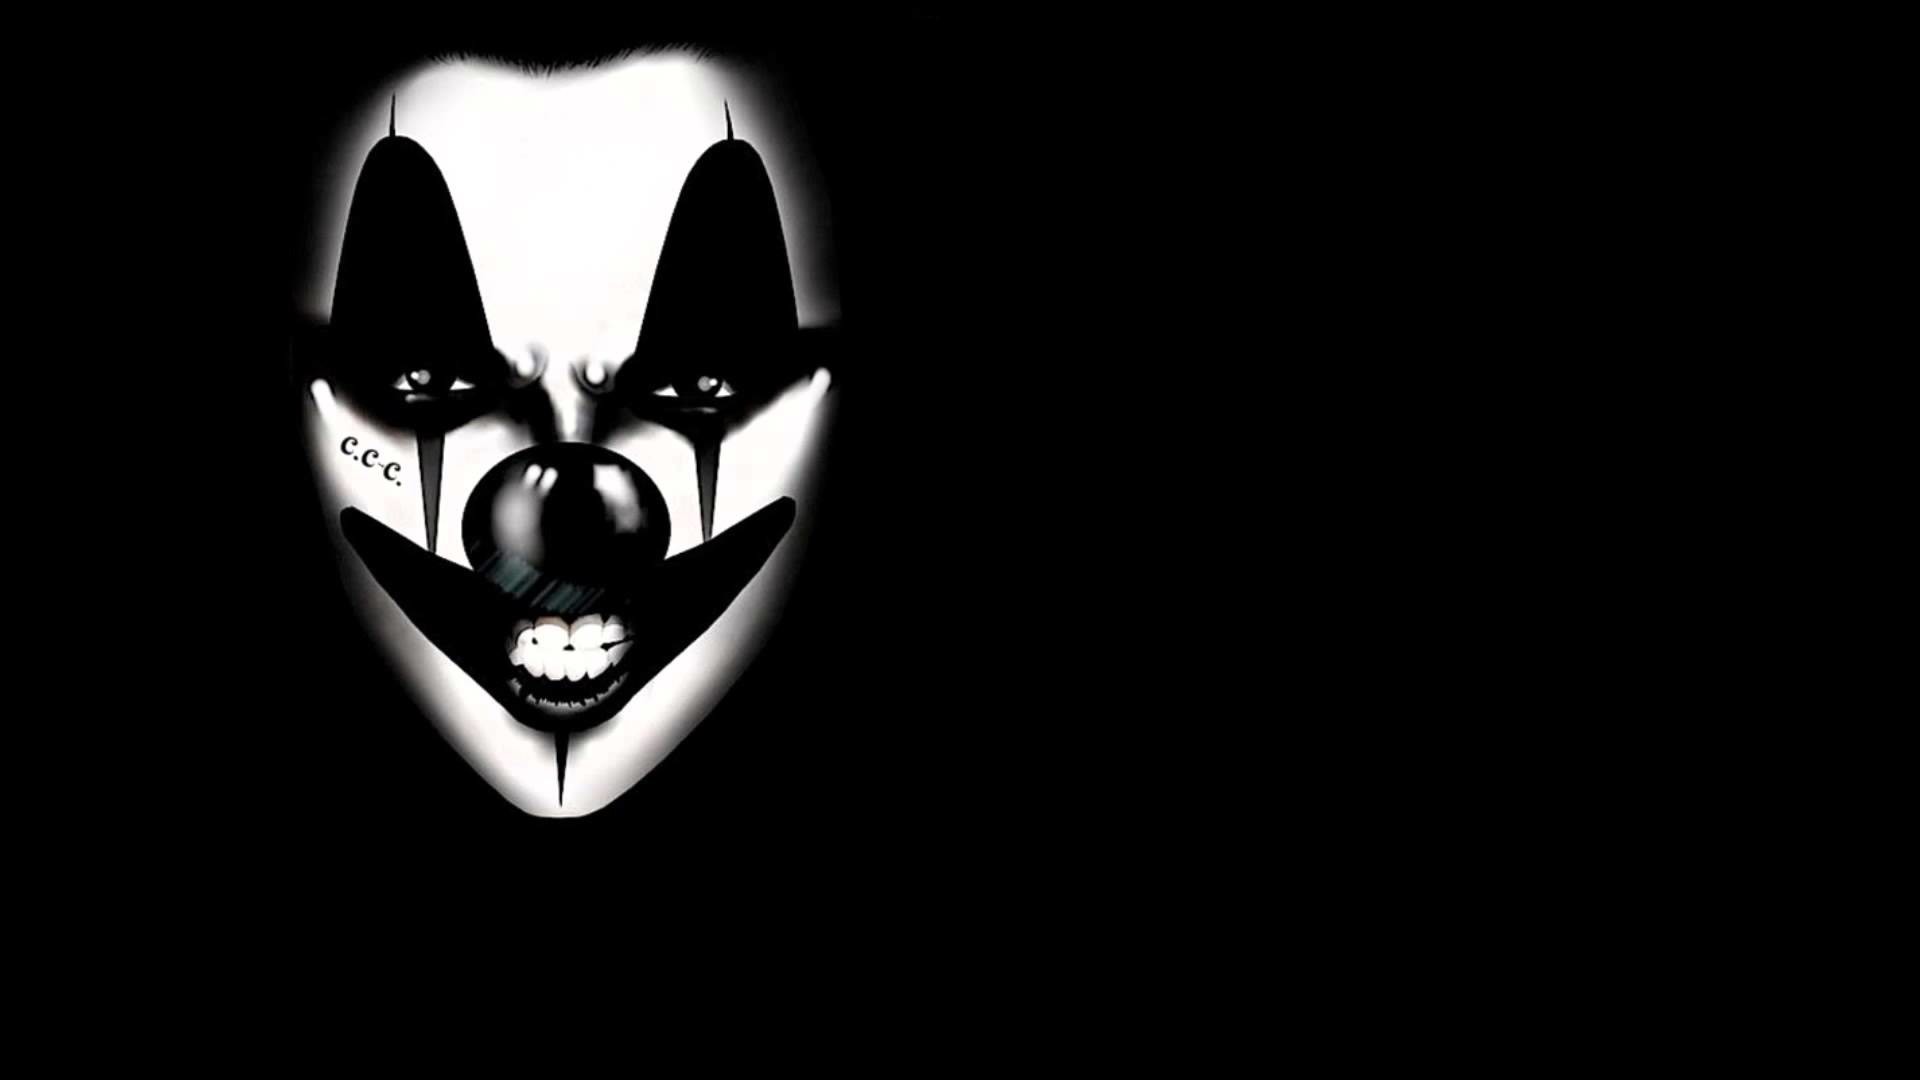 1920x1080, Scary Joker Wallpapers - Evil Clown - HD Wallpaper 